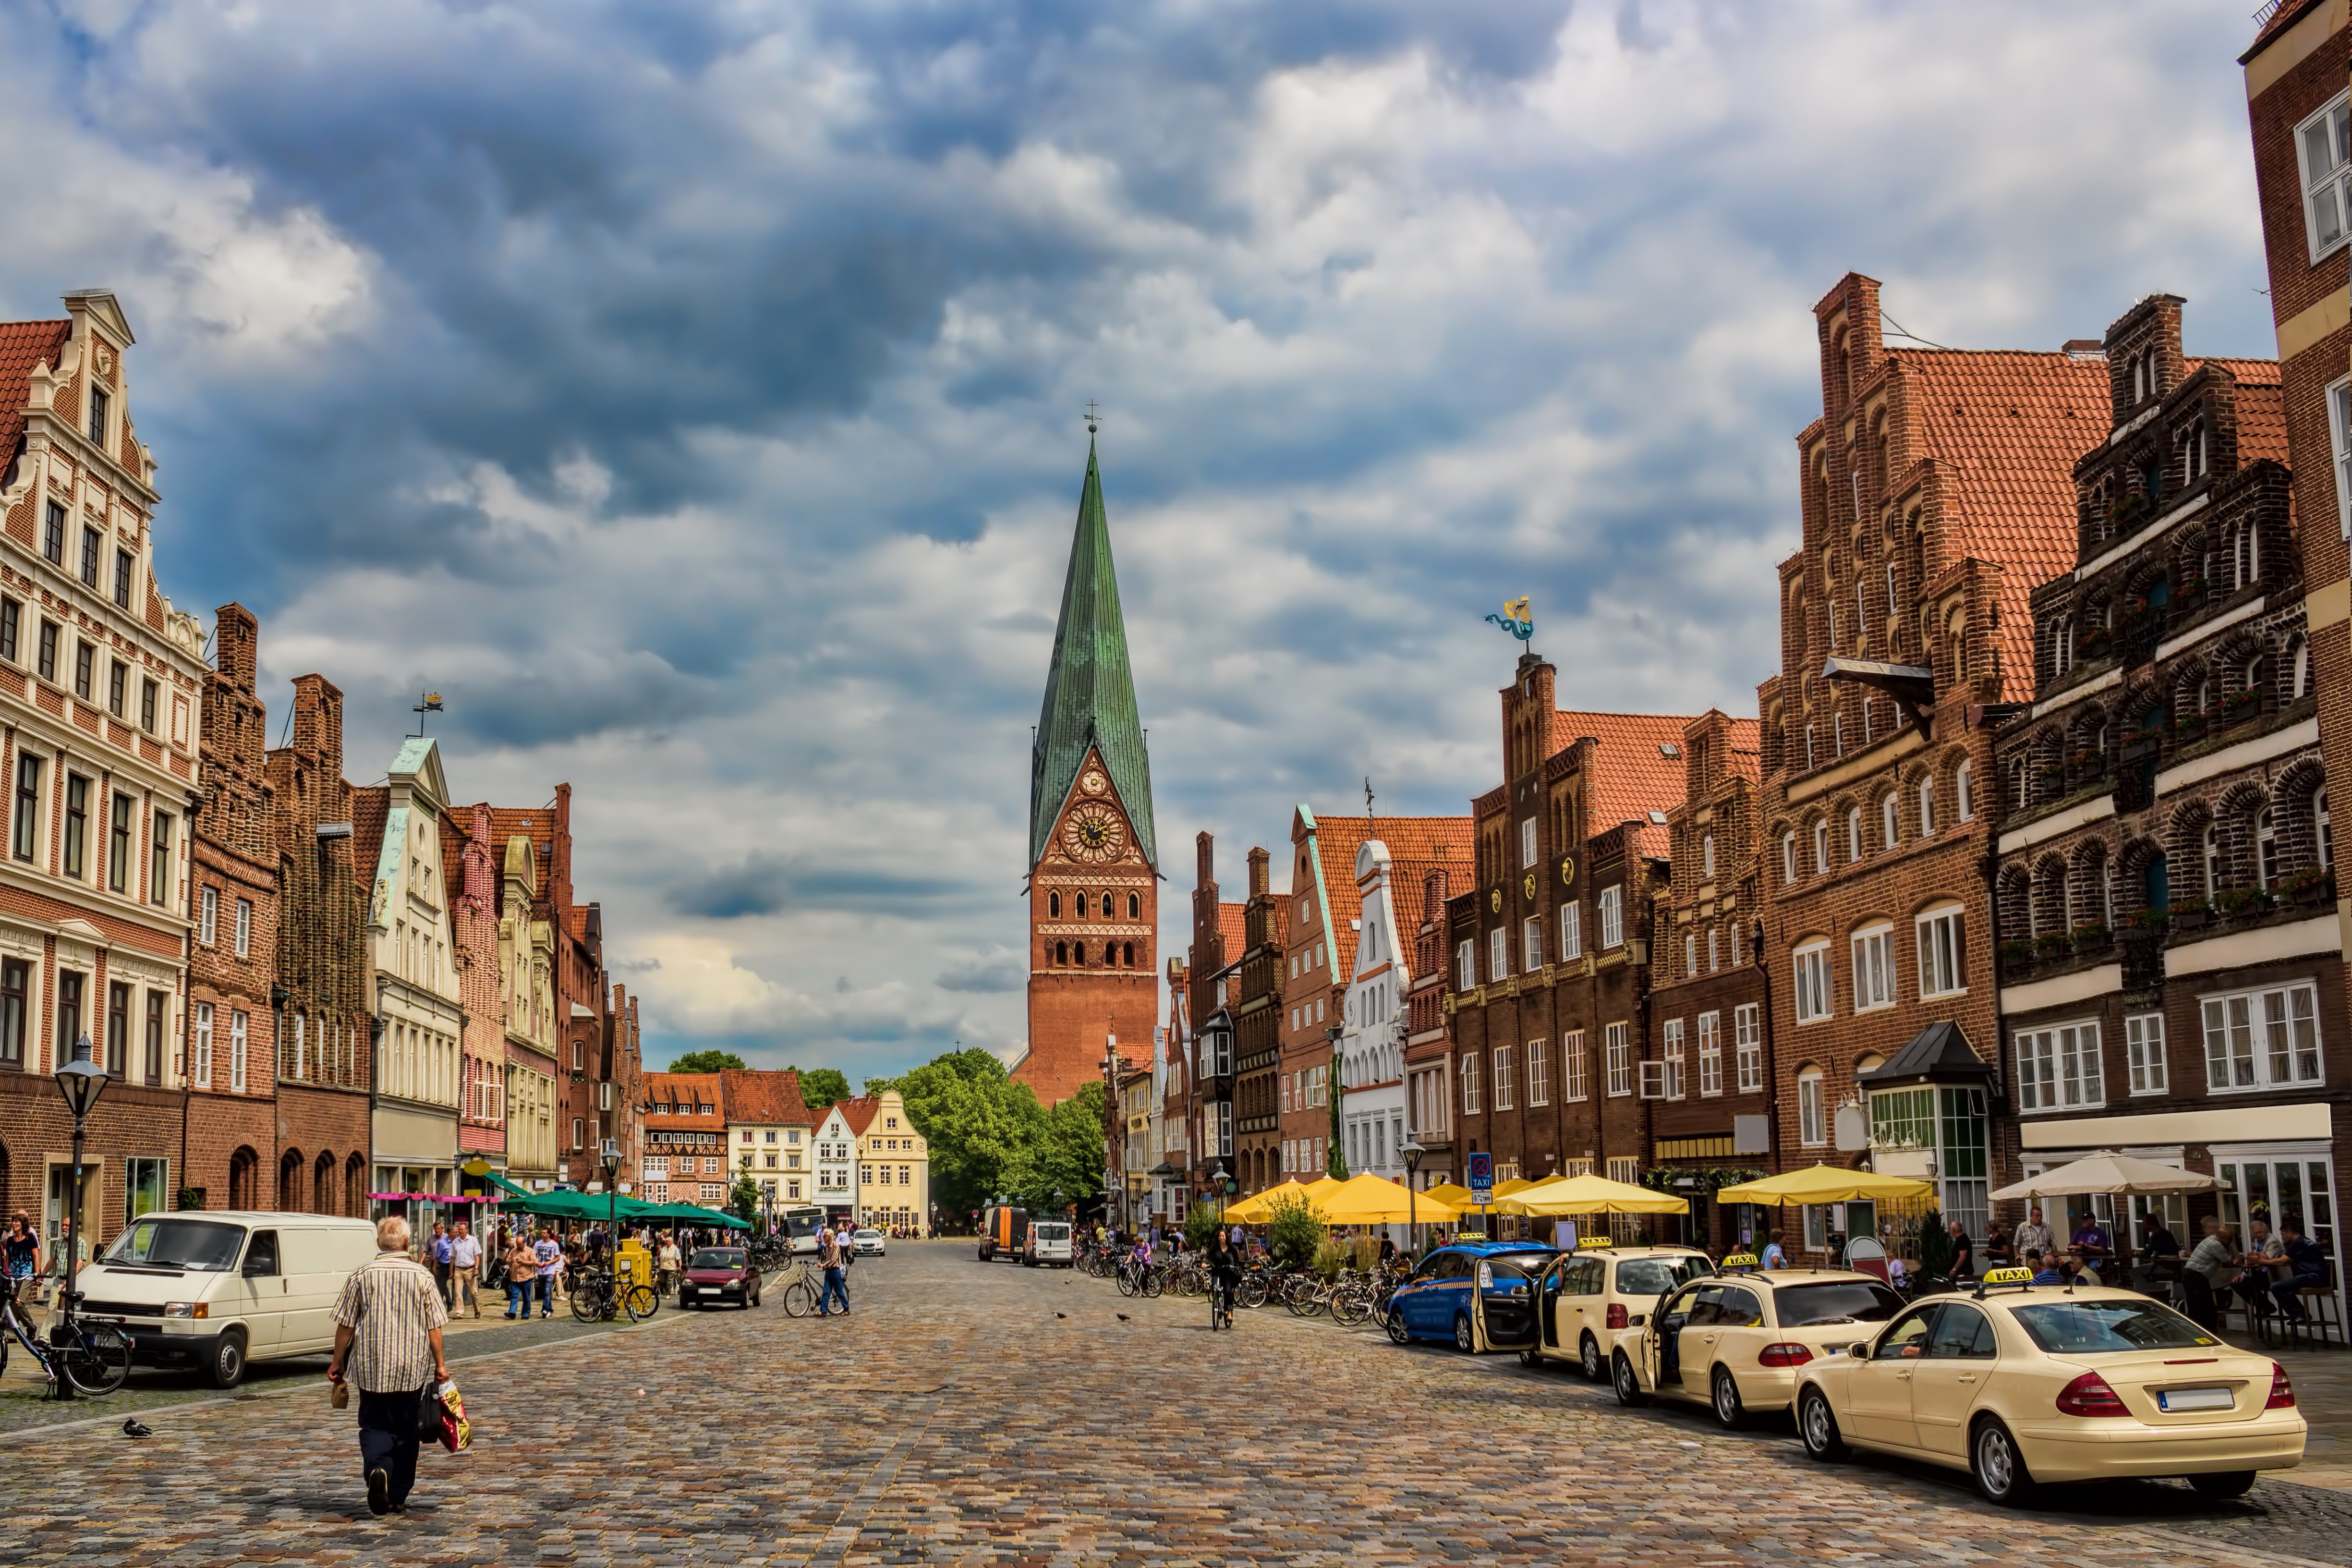 Bus mieten Lüneburg - Ansicht Straße mit historischen Häusern und Kirche